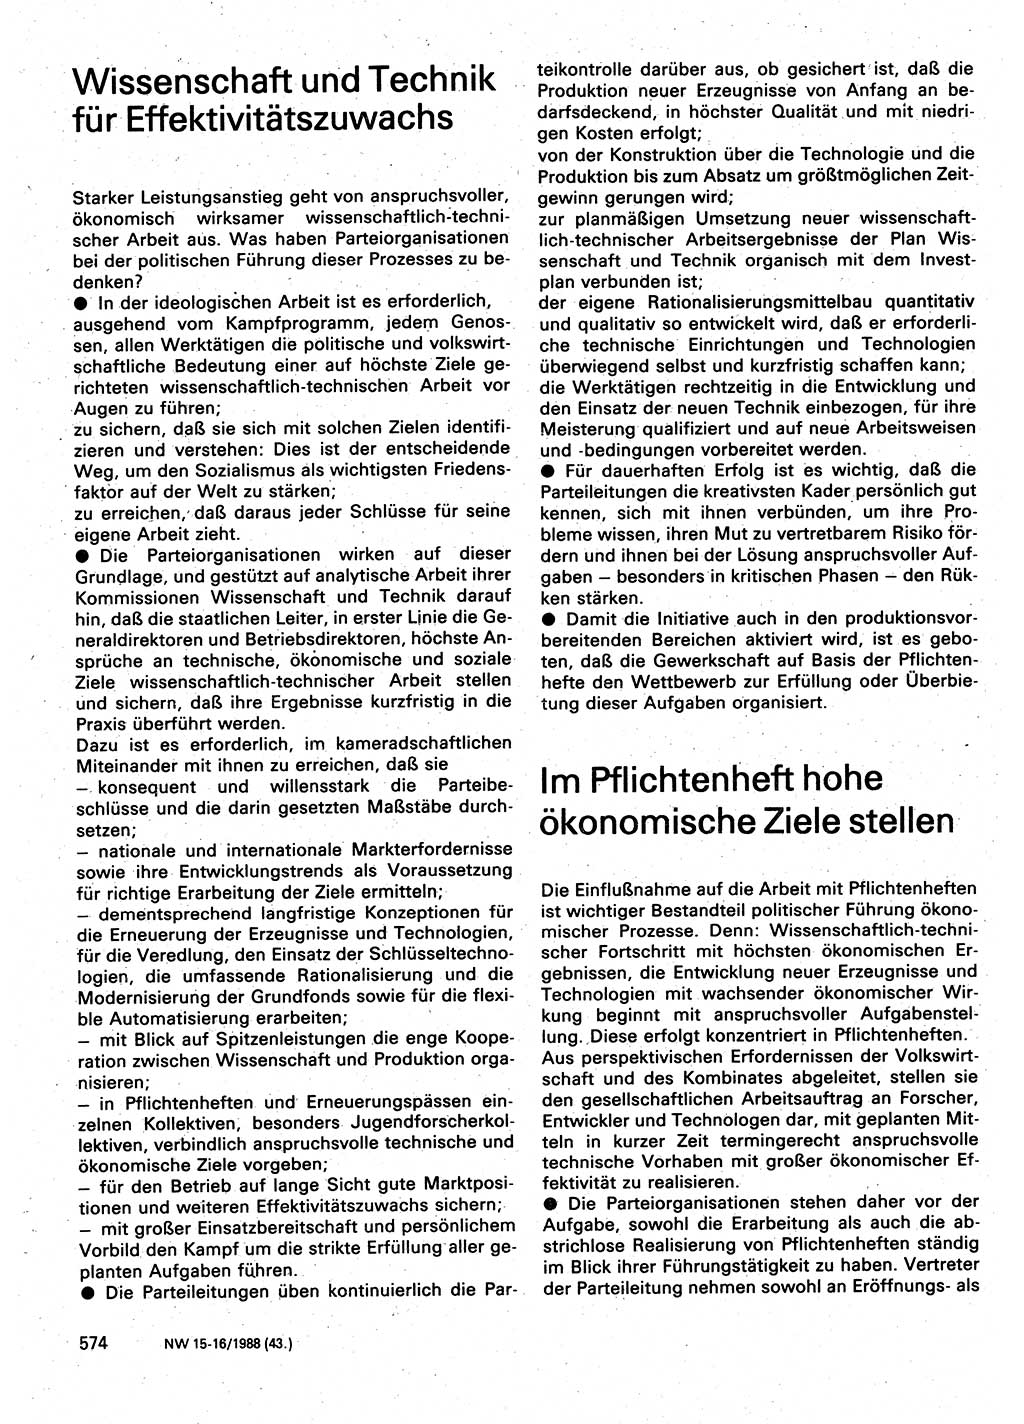 Neuer Weg (NW), Organ des Zentralkomitees (ZK) der SED (Sozialistische Einheitspartei Deutschlands) für Fragen des Parteilebens, 43. Jahrgang [Deutsche Demokratische Republik (DDR)] 1988, Seite 574 (NW ZK SED DDR 1988, S. 574)